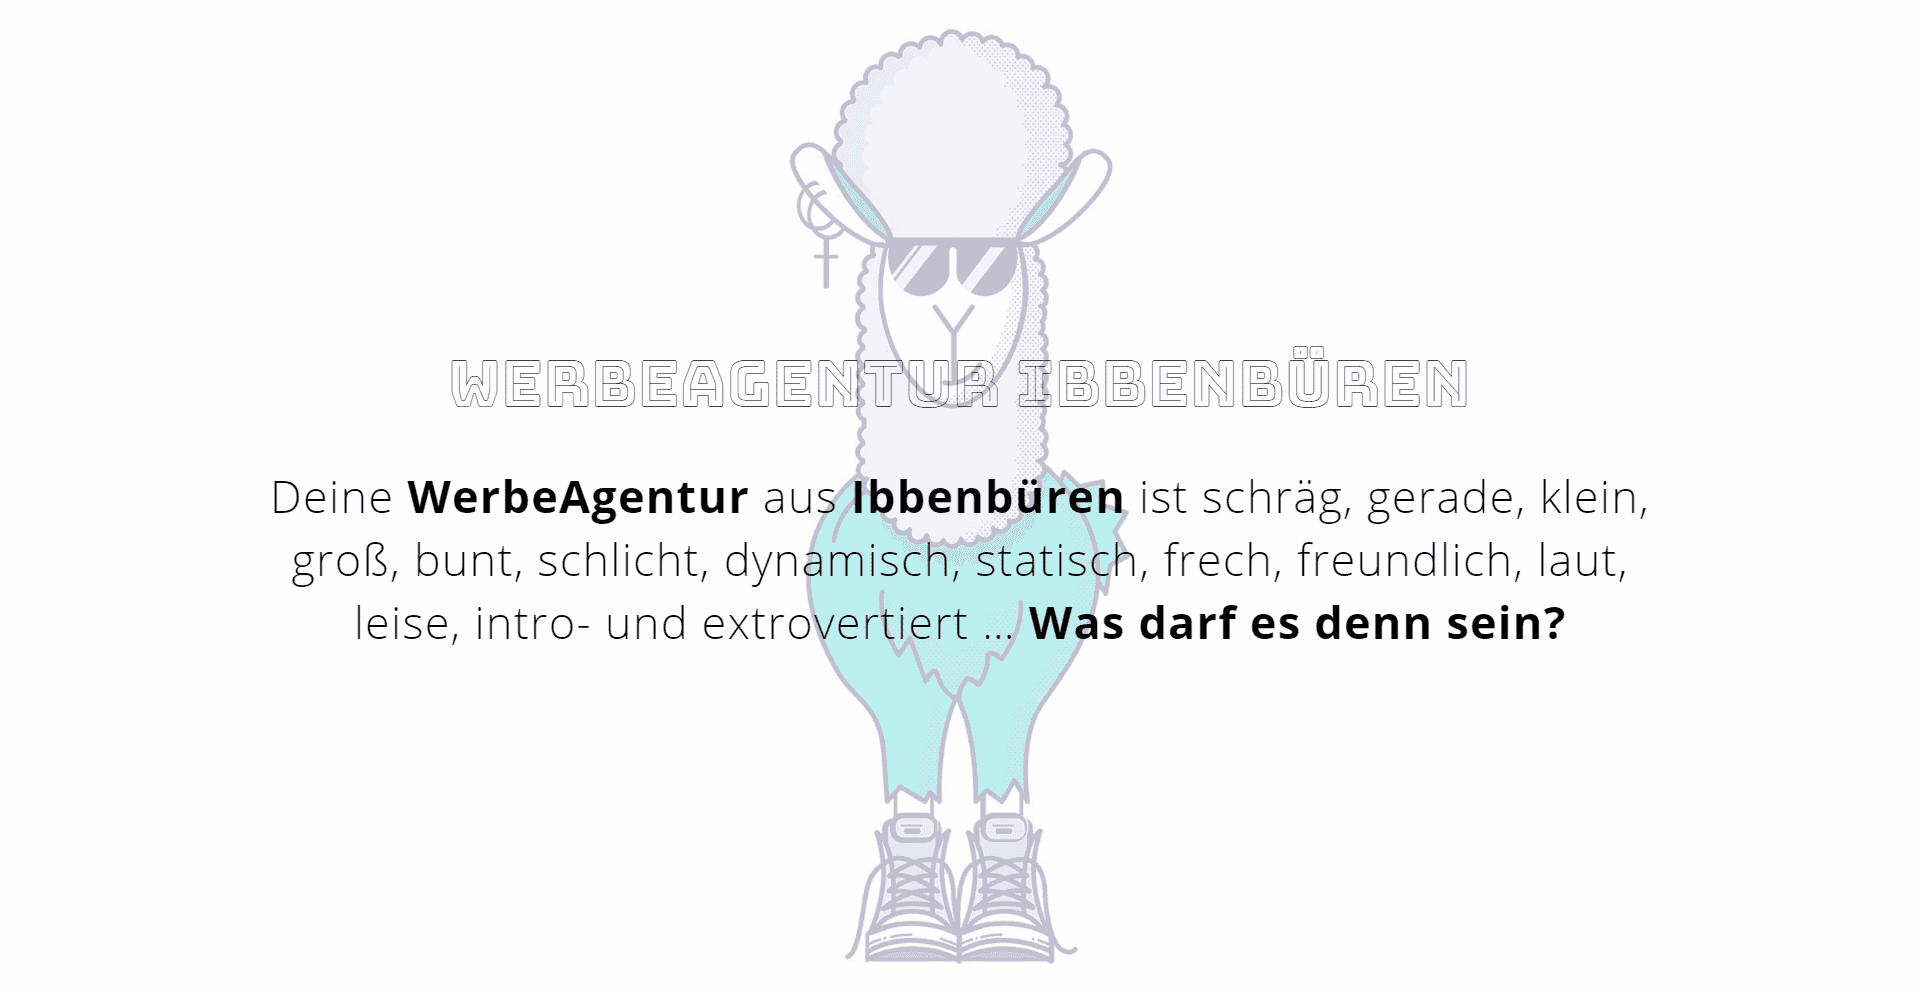 Werbeagentur Ibbenbüren - WordPress Webdesign Referenz